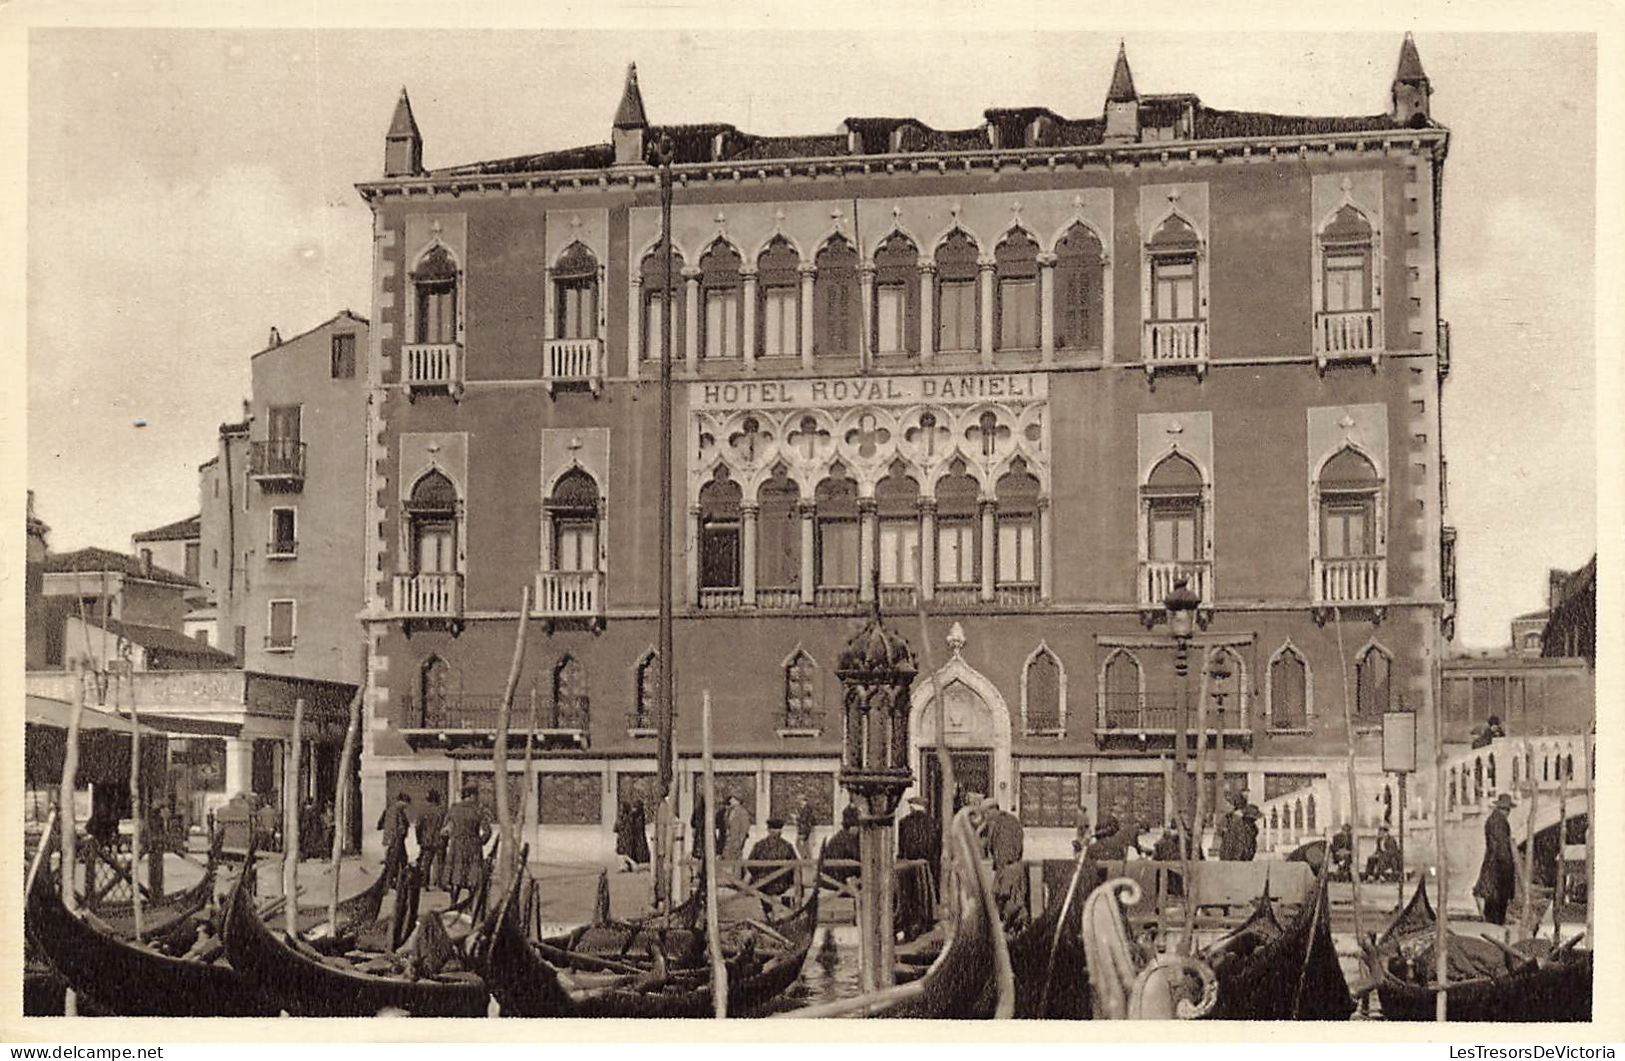 ITALIE - Venezia - Hôtel Royal Danieli - Vue Générale D'un Hôtel - Vue De L'extérieur - Carte Postale Ancienne - Venezia (Venice)